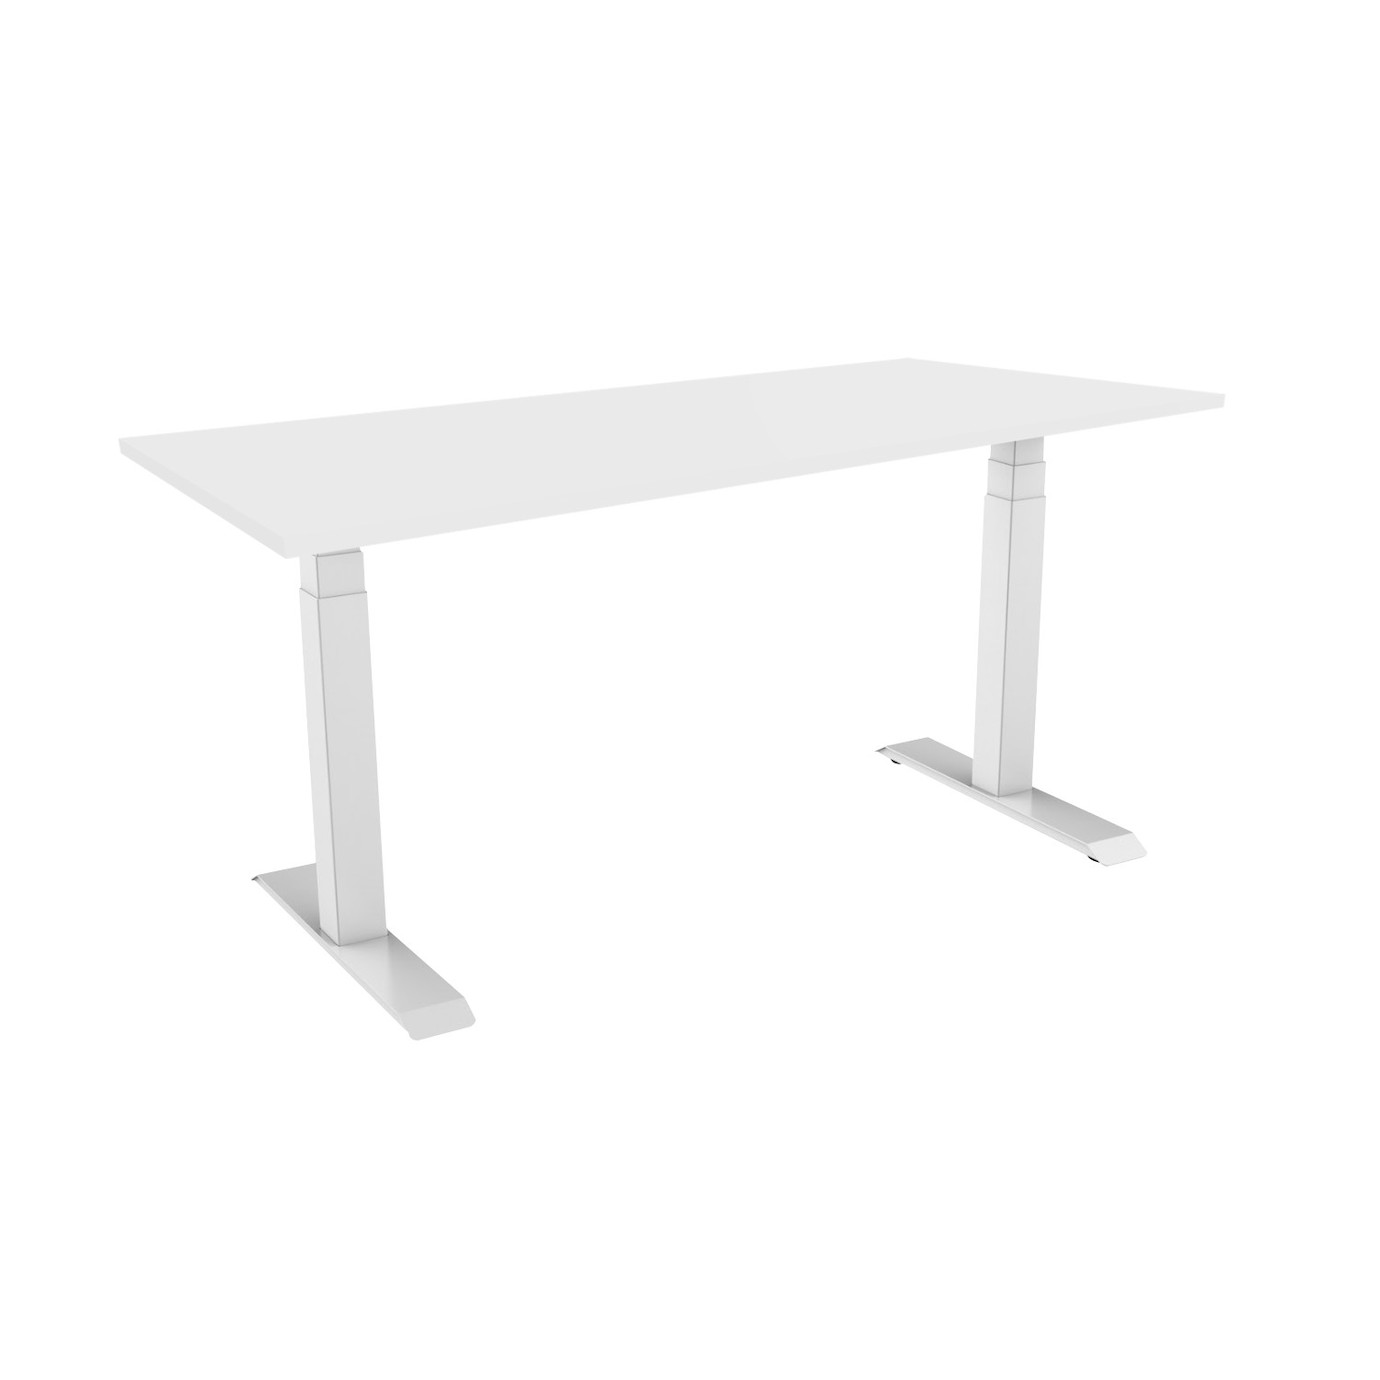 Vorschau: celexon höhenverstellbarer Schreibtisch Pro eAdjust-58123 - weiß, inkl. Tischplatte 150 x 75 cm